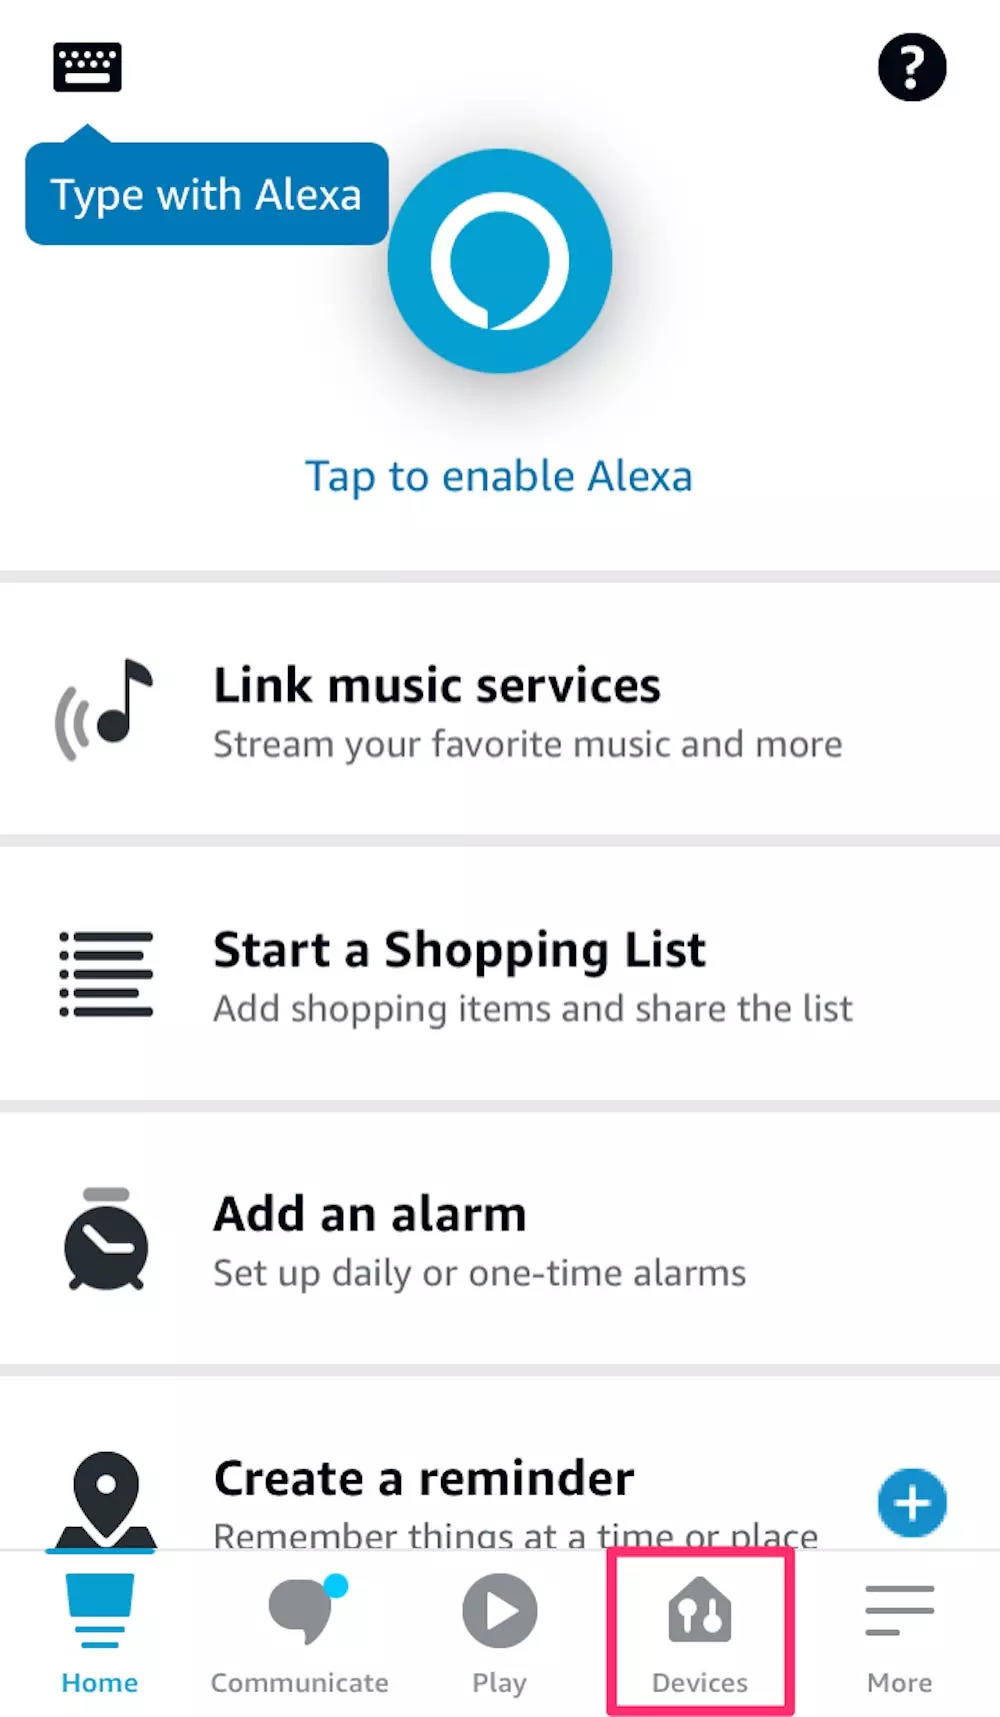 Hvordan kobler jeg telefonen min til Alexa uten appen?